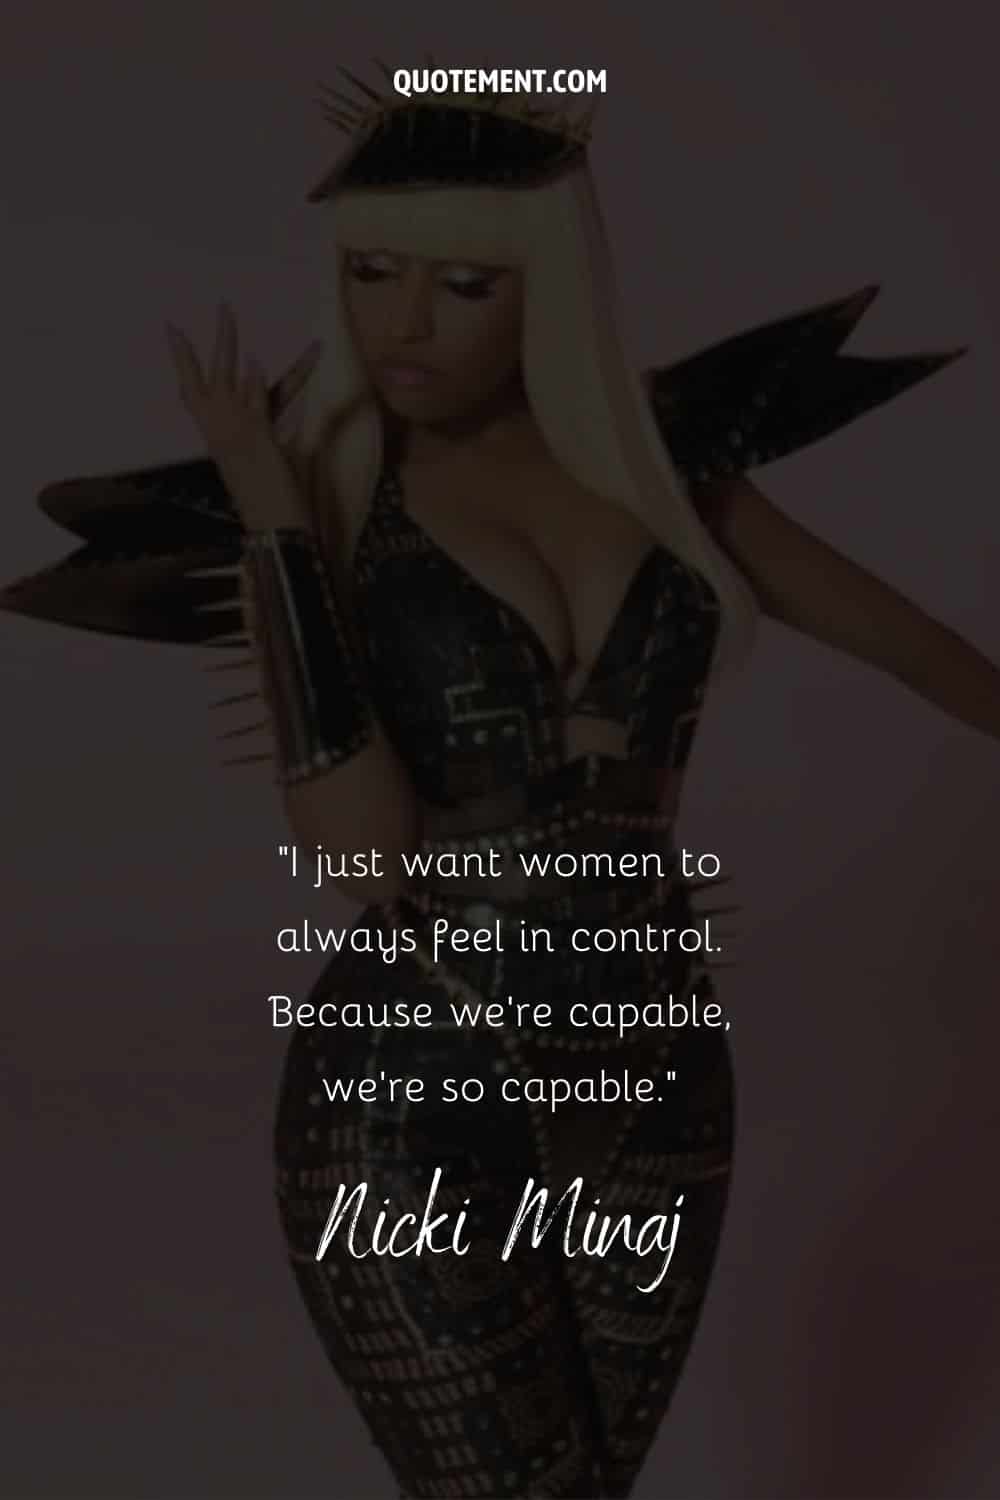 Cita inspiradora para las mujeres de Nicki Minaj, y también su foto de fondo